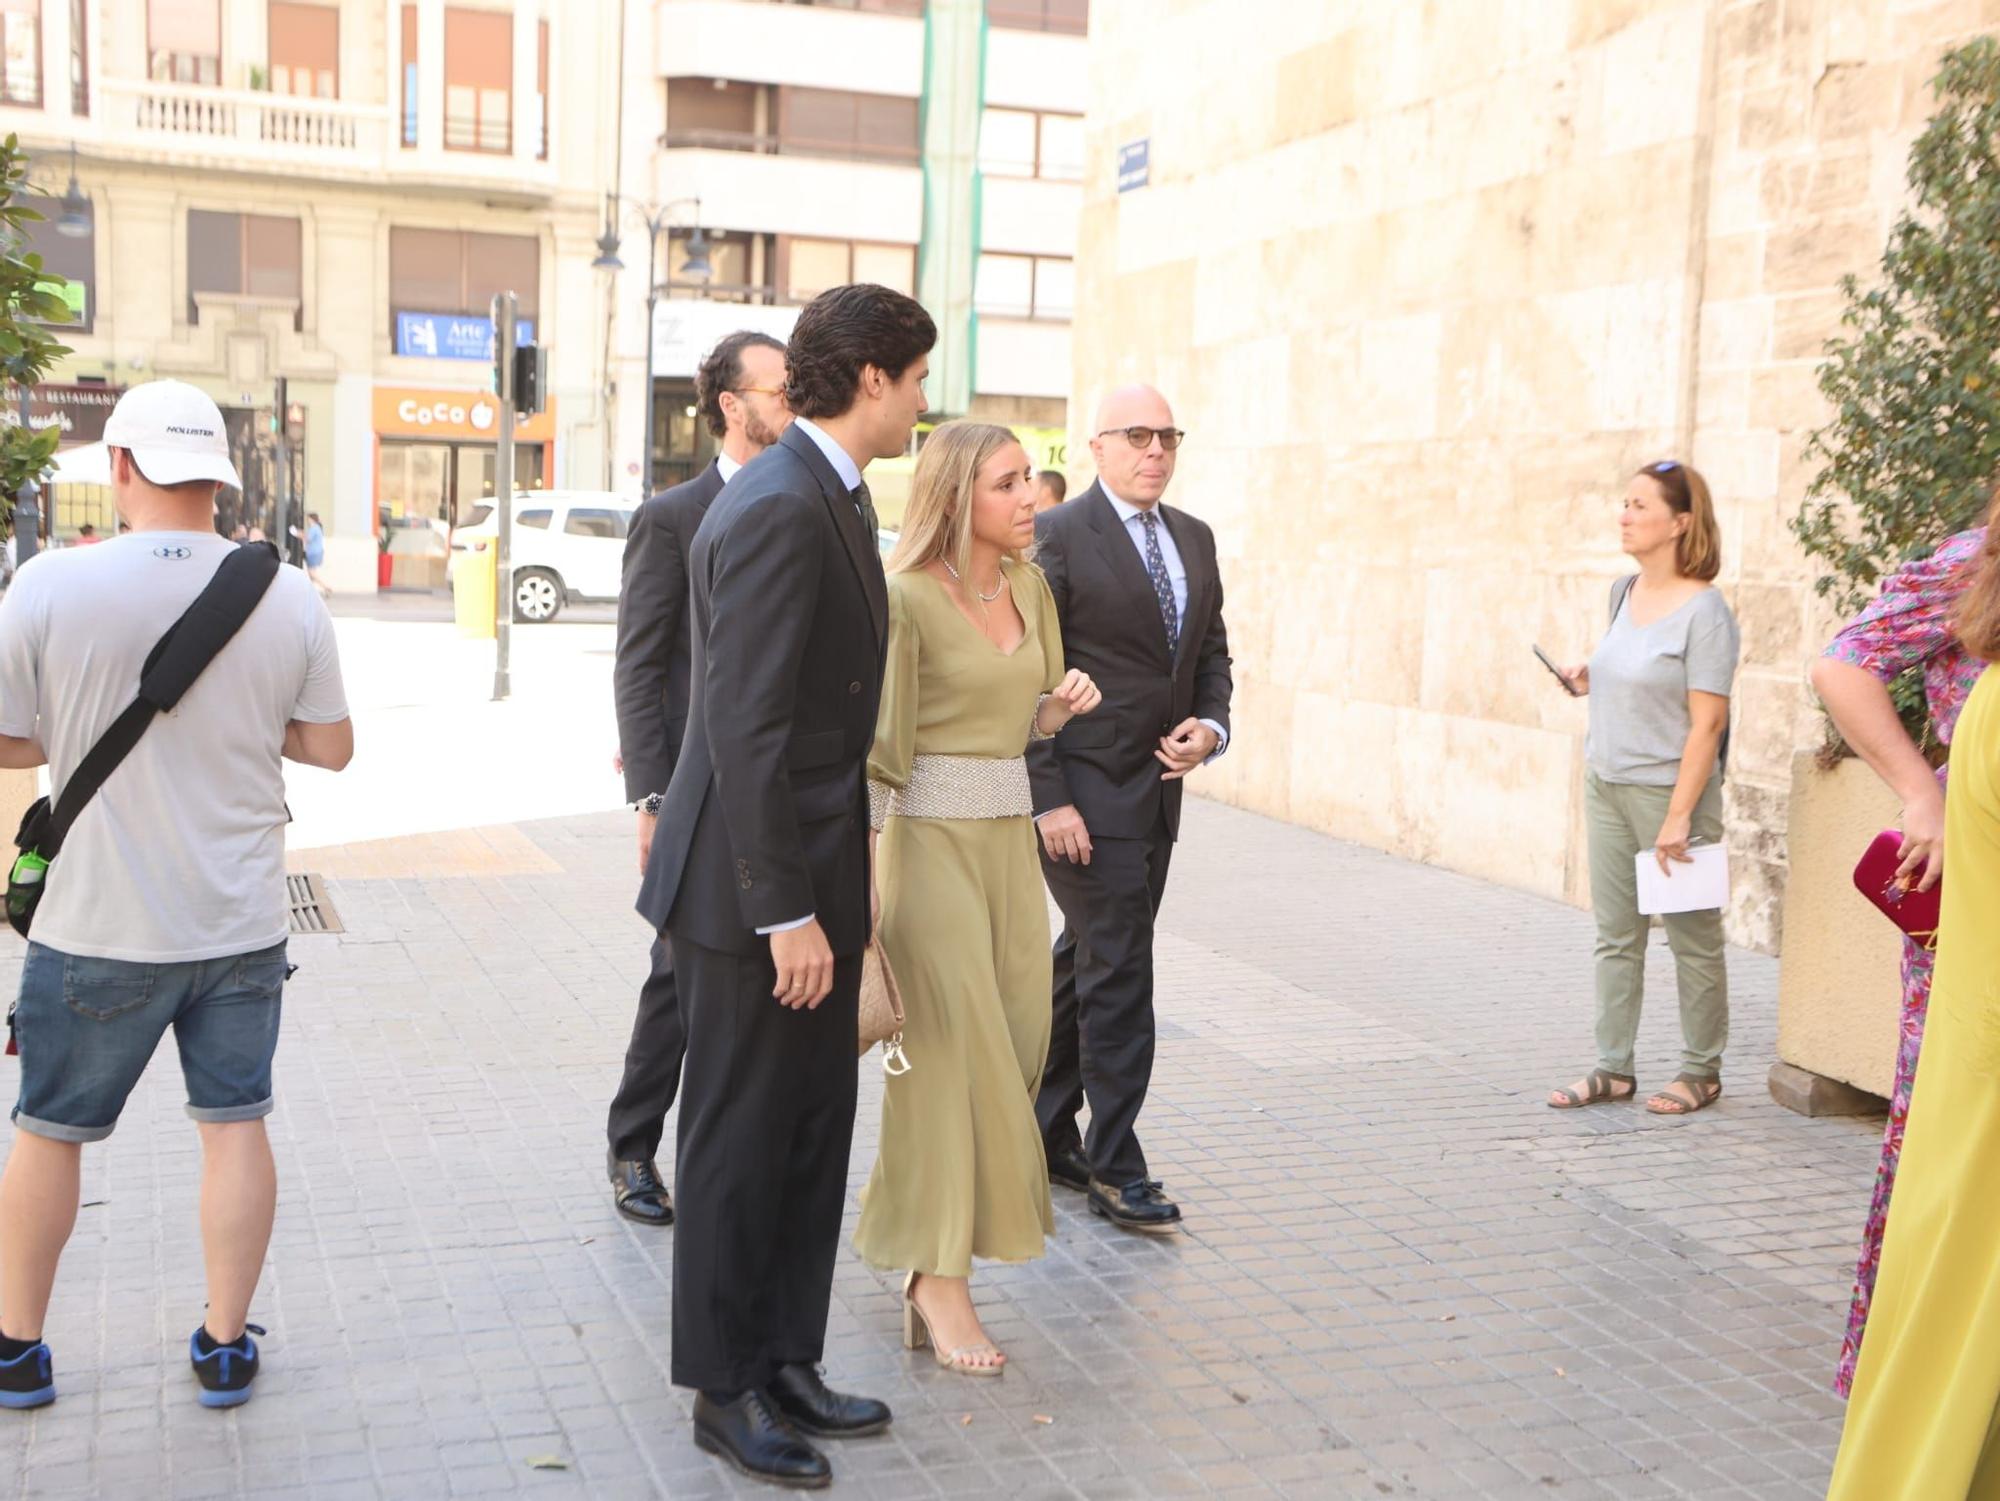 Koplowitz, Alcocer y Rato, algunos de los apellidos invitados a la boda del año en València